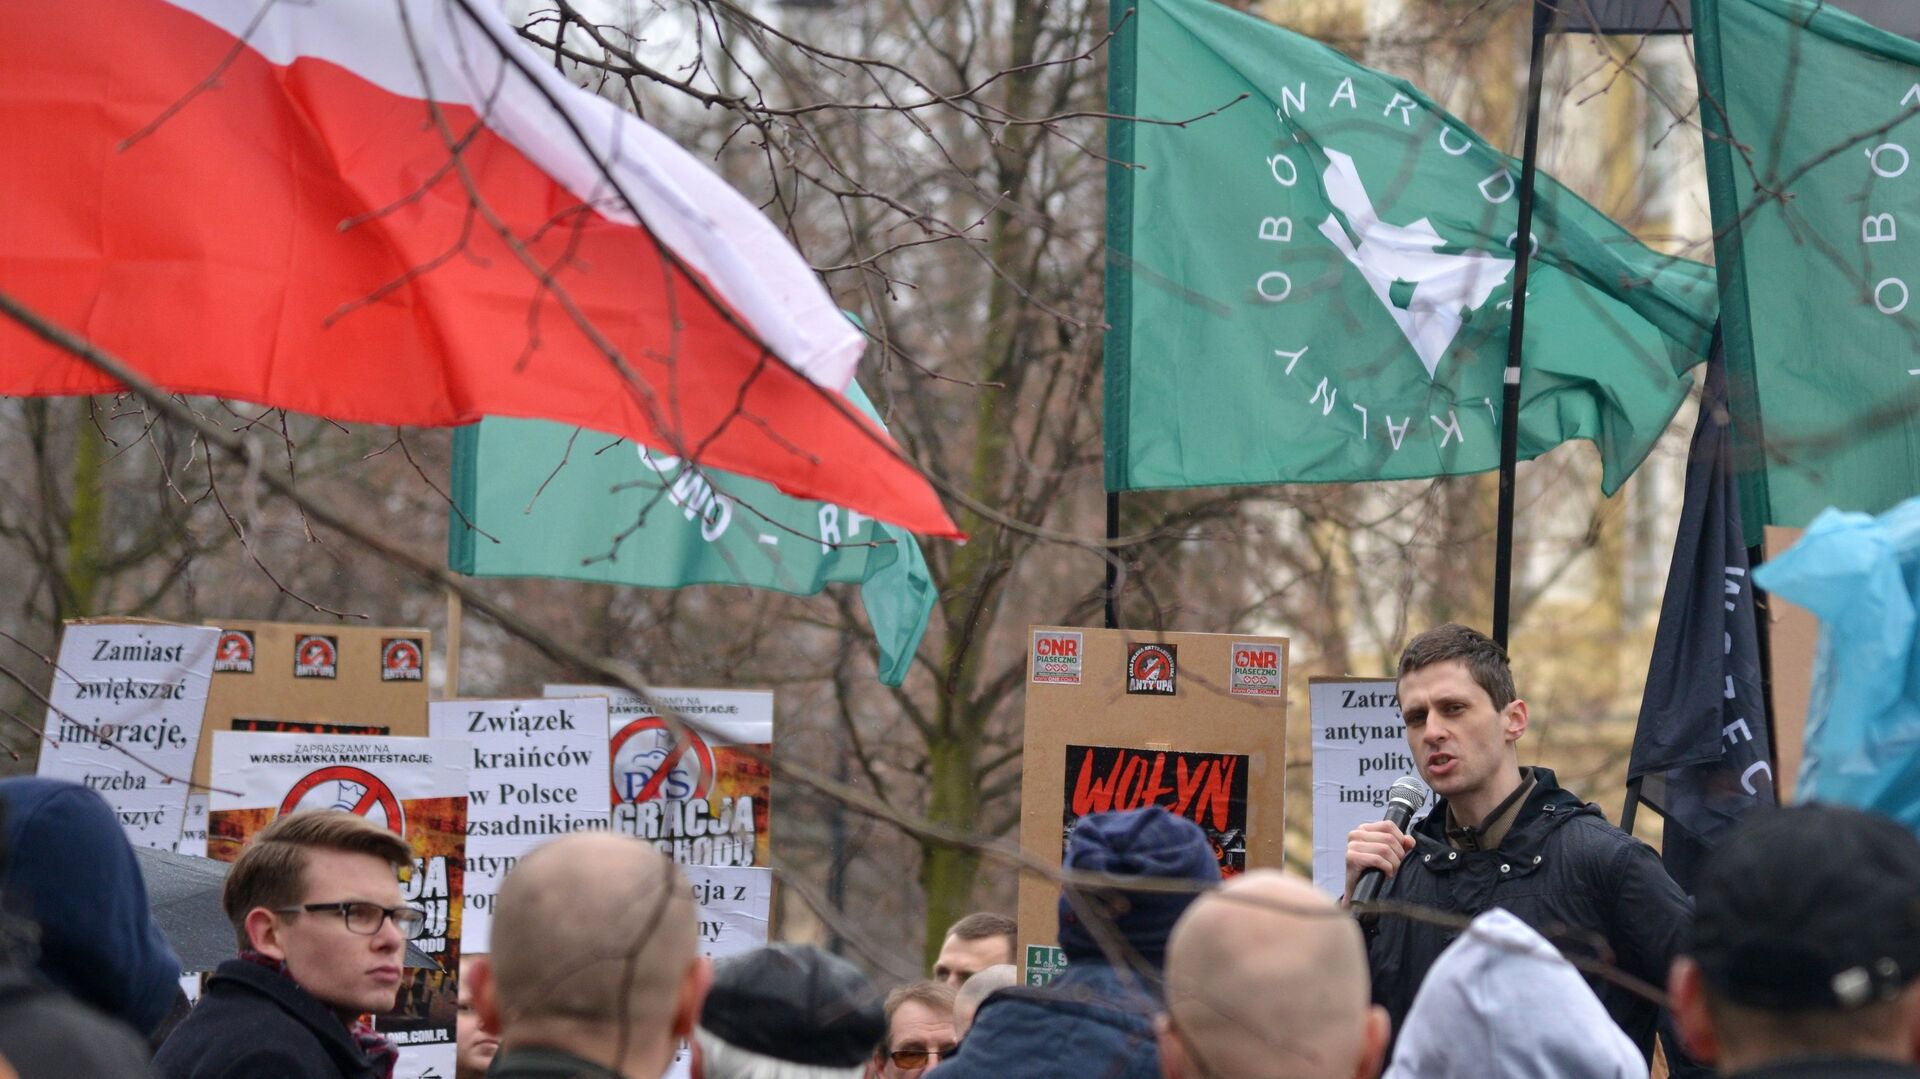 Участники митинга против возросшего числа украинских мигрантов в Варшаве. 18 марта 2017 года  - ИноСМИ, 1920, 22.11.2023